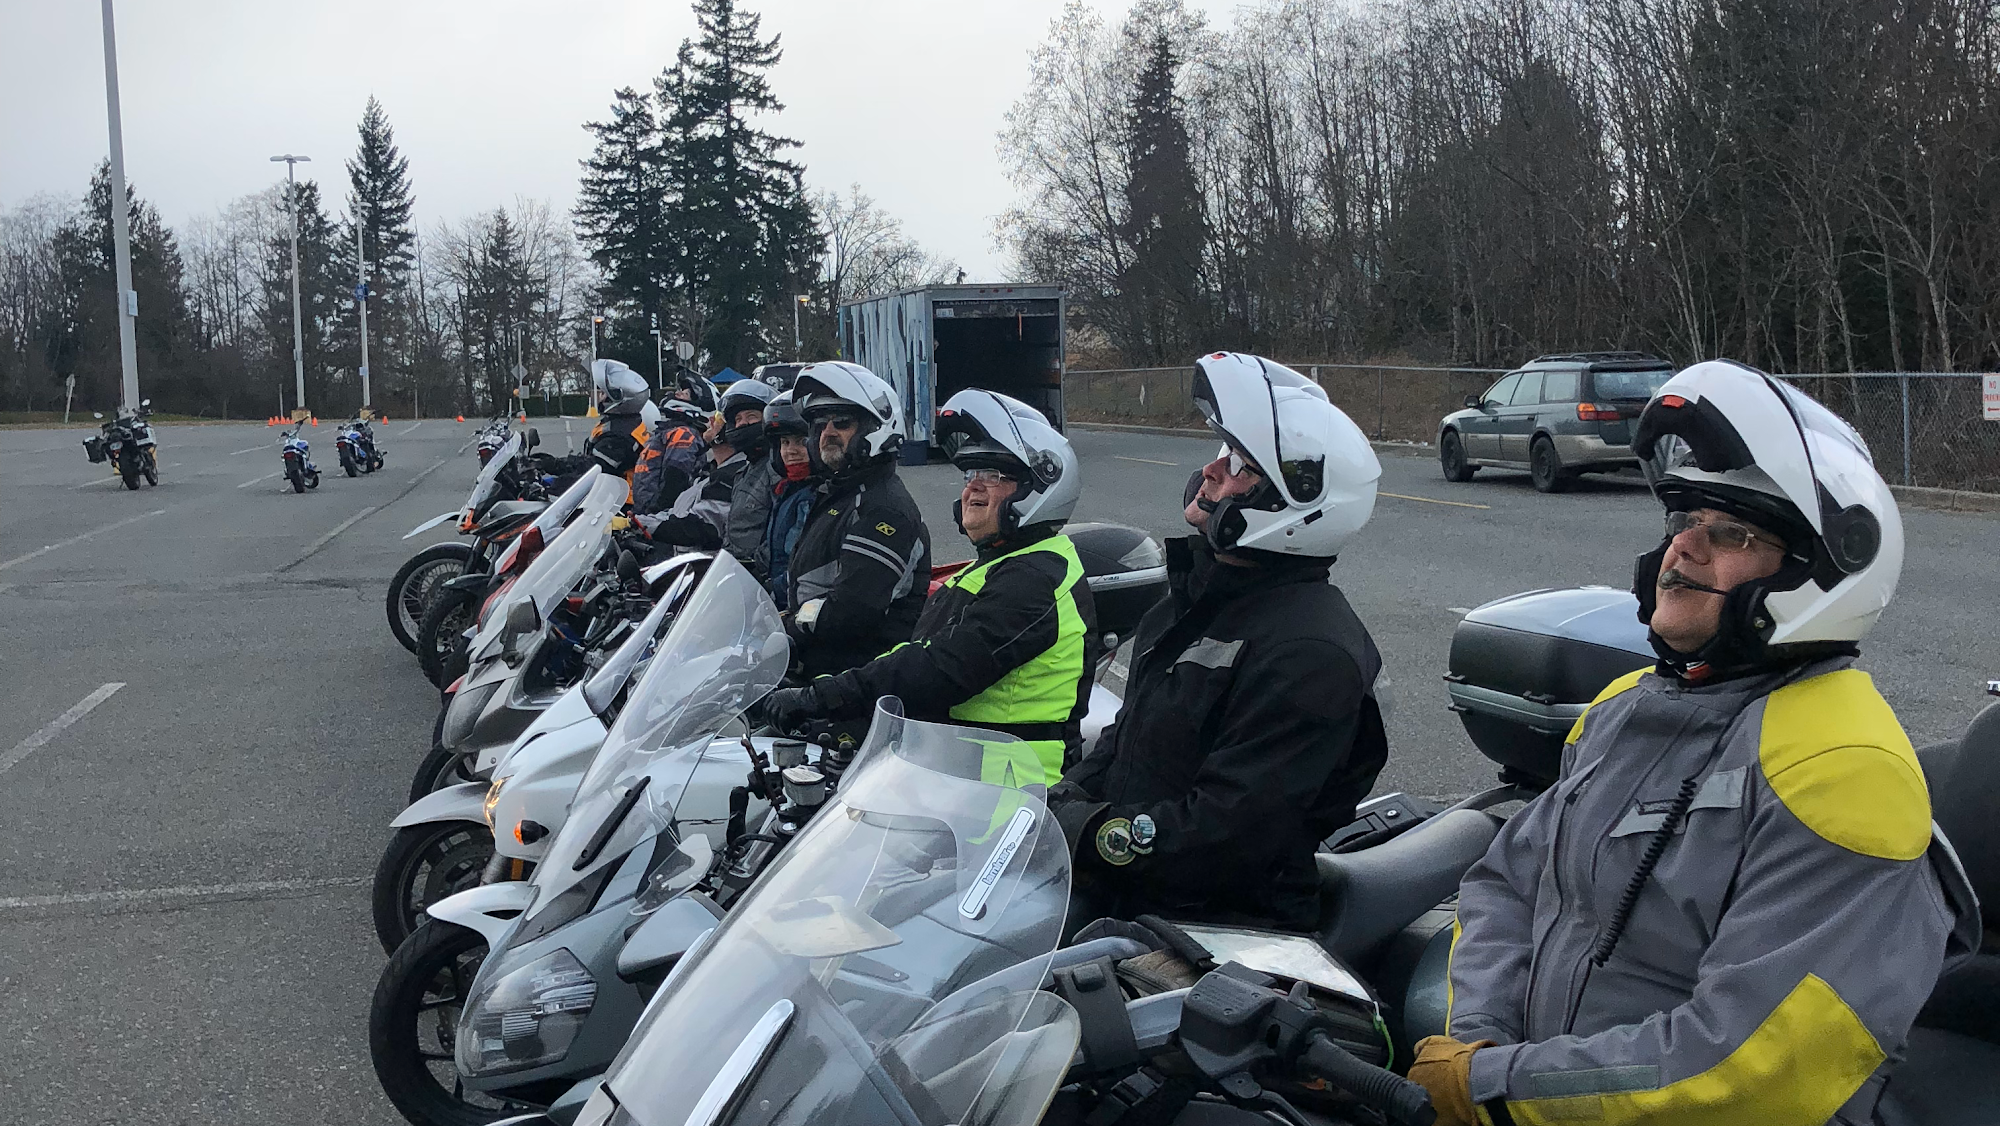 Washington Motorcycle Safety Training.DOL Approved testing & training